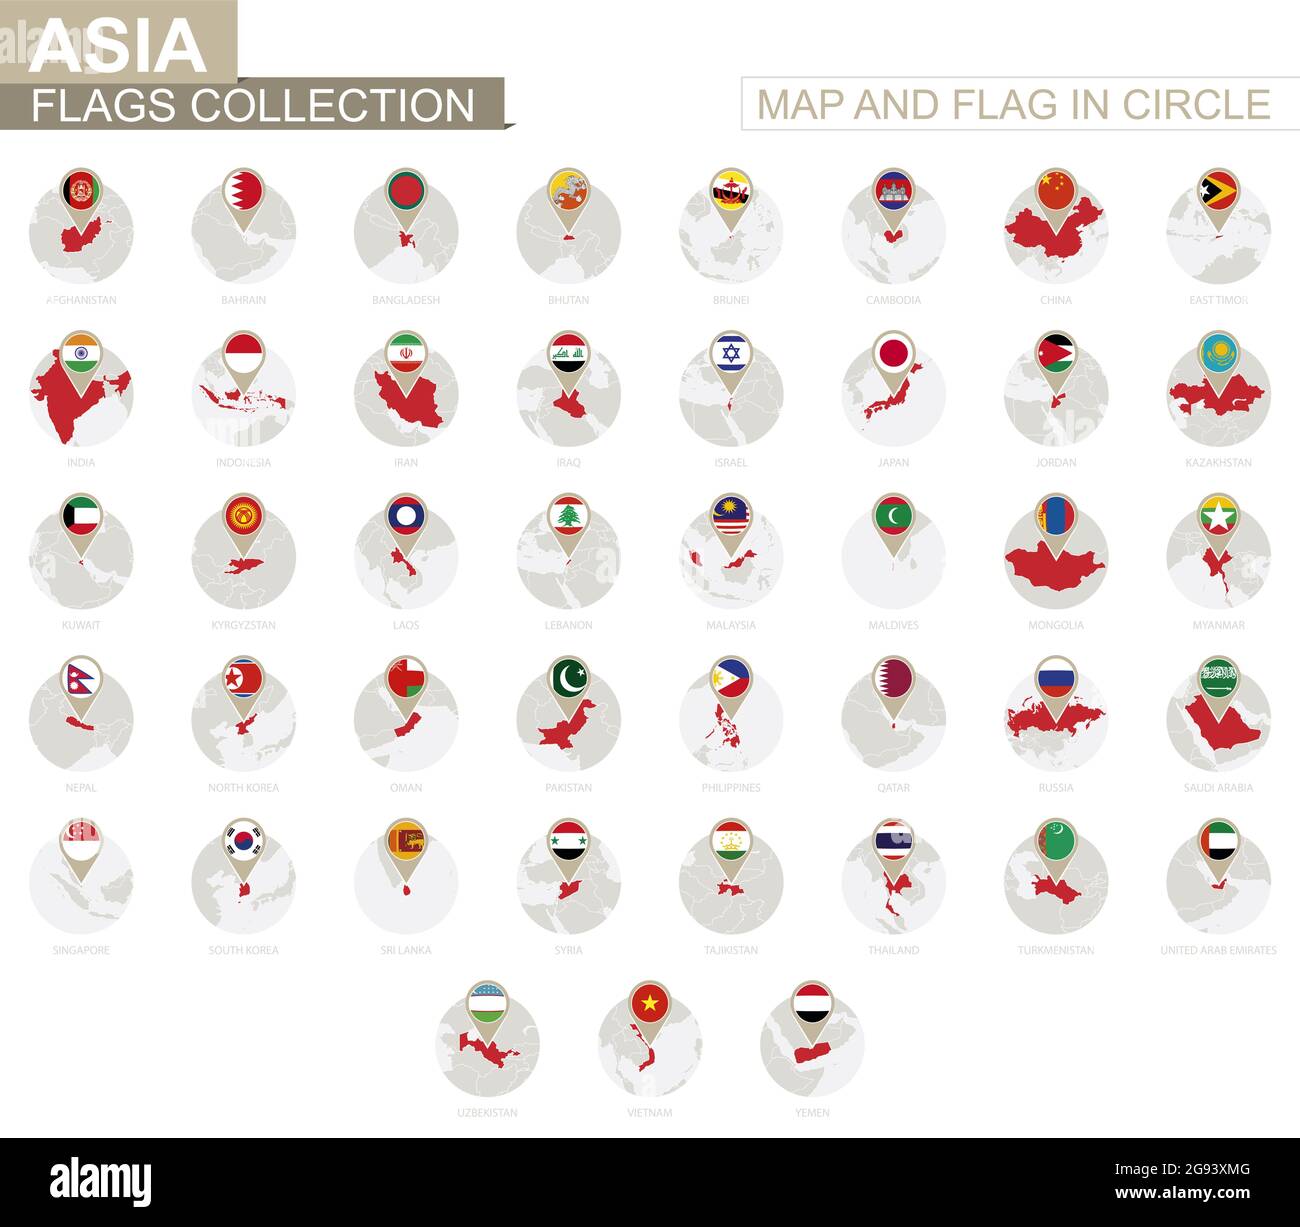 Karte und Flagge in Circle, Sammlung Asien. Alphabetisch sortierte Flaggen und Karten. Vektorgrafik. Stock Vektor